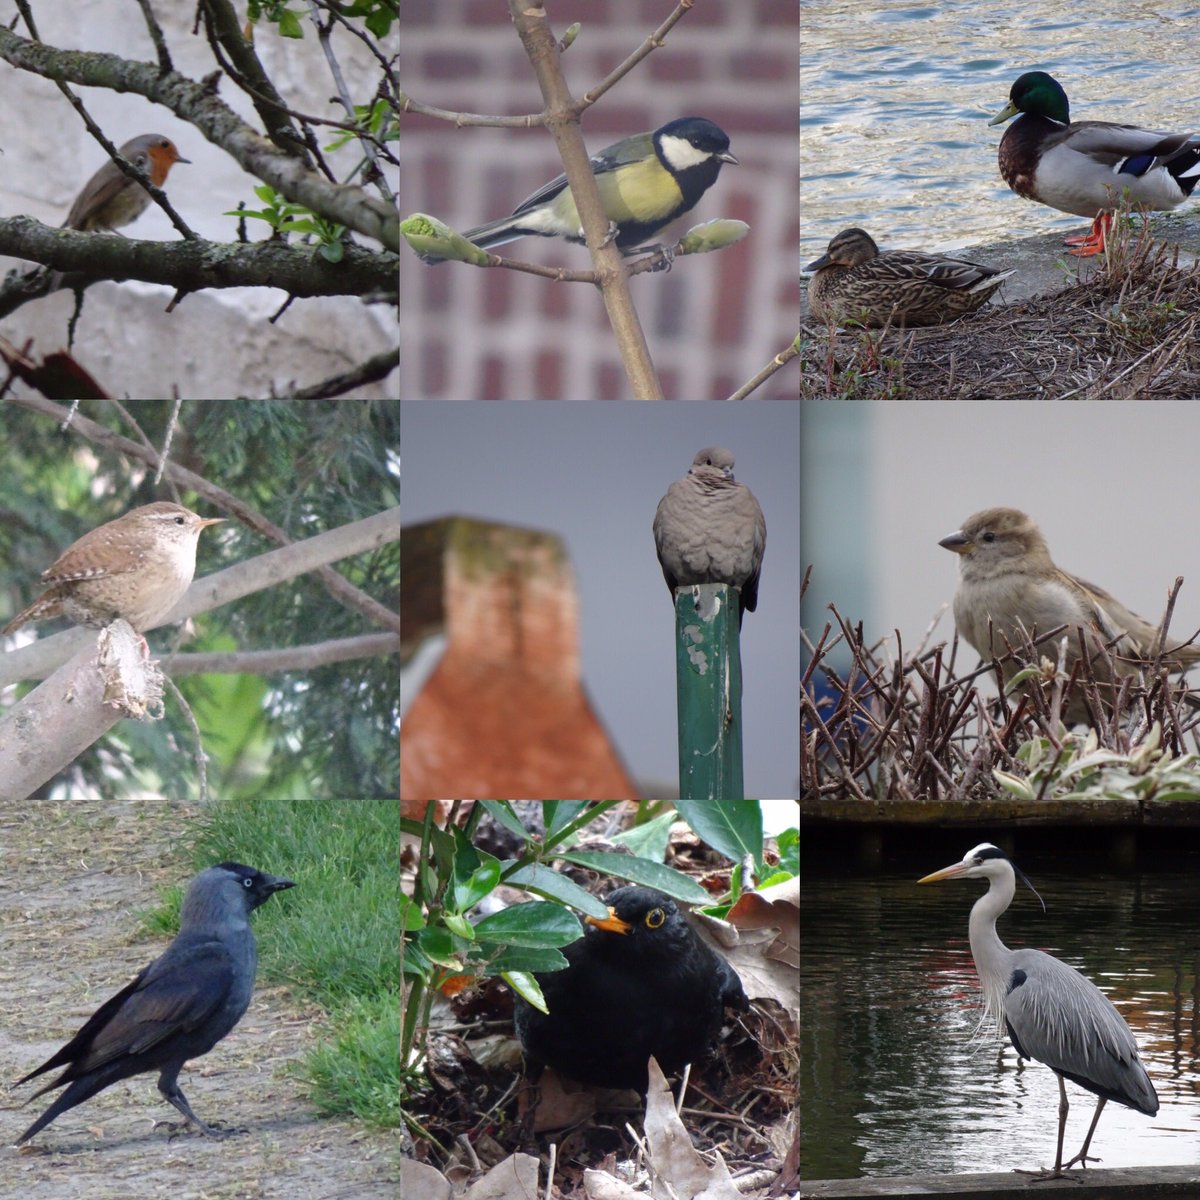 En plus de 50 jours de confinement et autant de promenades urbaines dans le  #Vieuxlille, j’ai découvert 29 espèces d’oiseaux, que j’ai photographiées [plus ou moins bien]. Je vous emmène les découvrir...À dérouler  #Lille  #birds  #birdphotography  #birdwatching  @LPOFrance